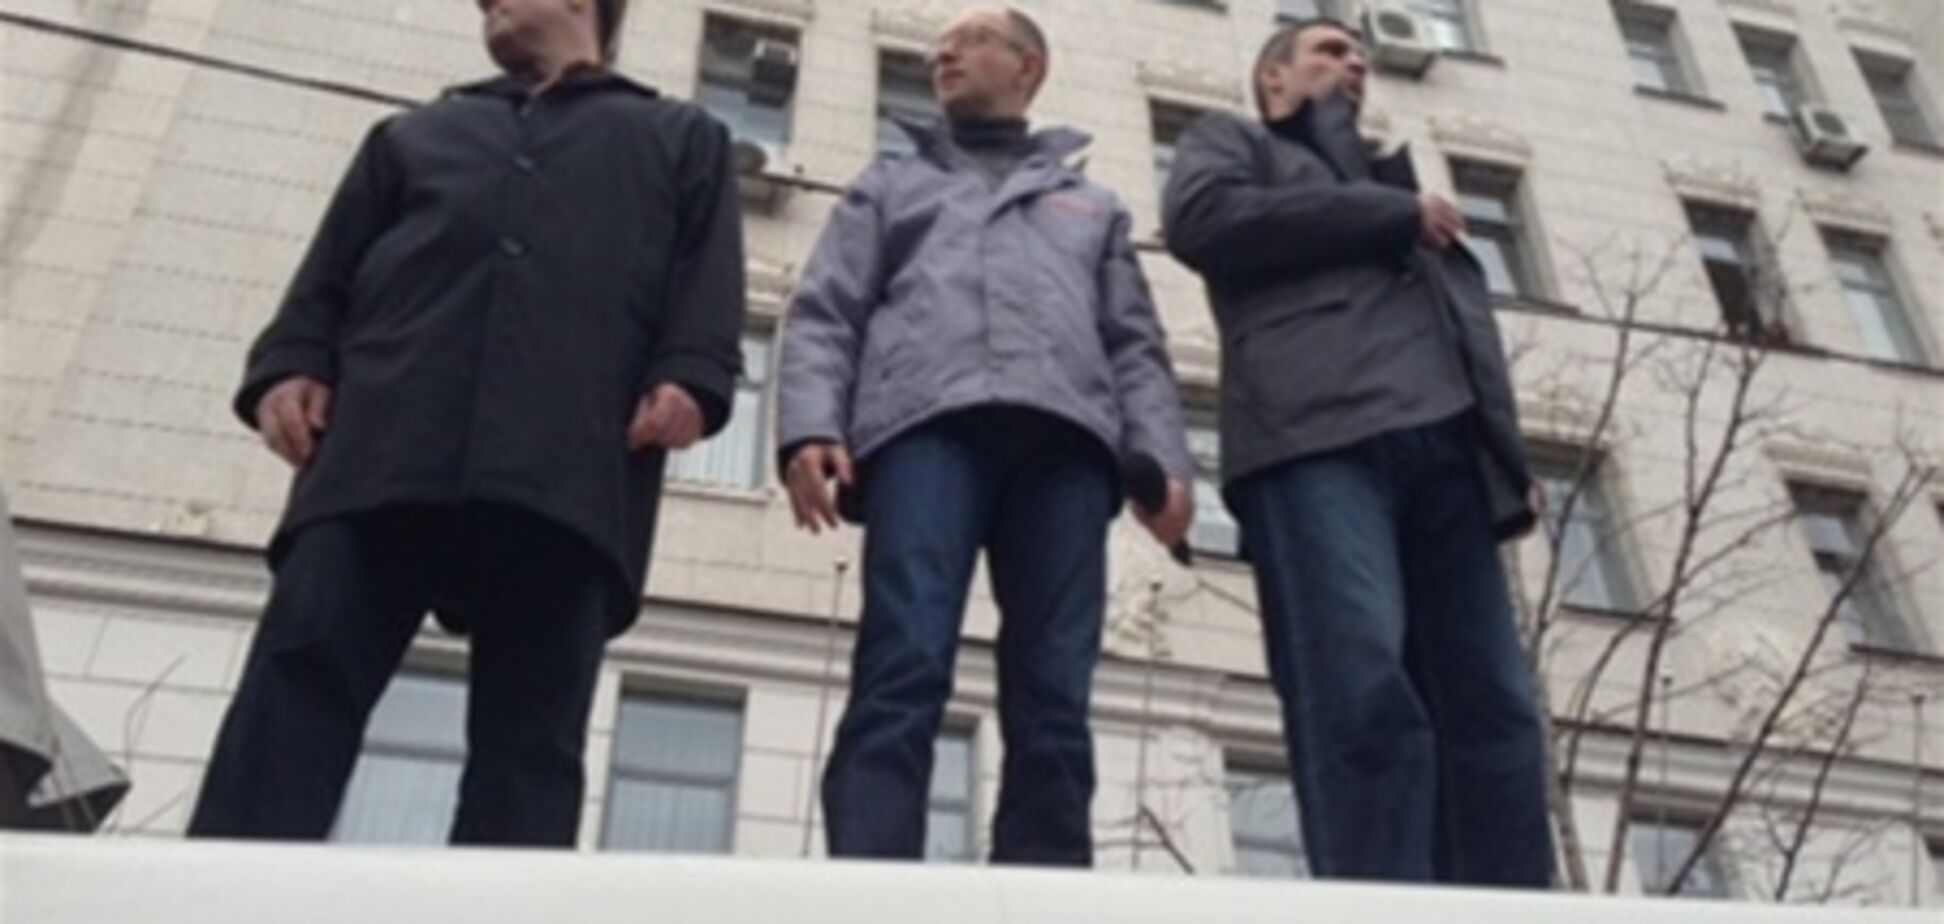 Міліція: на опозиційний мітинг у Харкові зібралися 1 тис. осіб